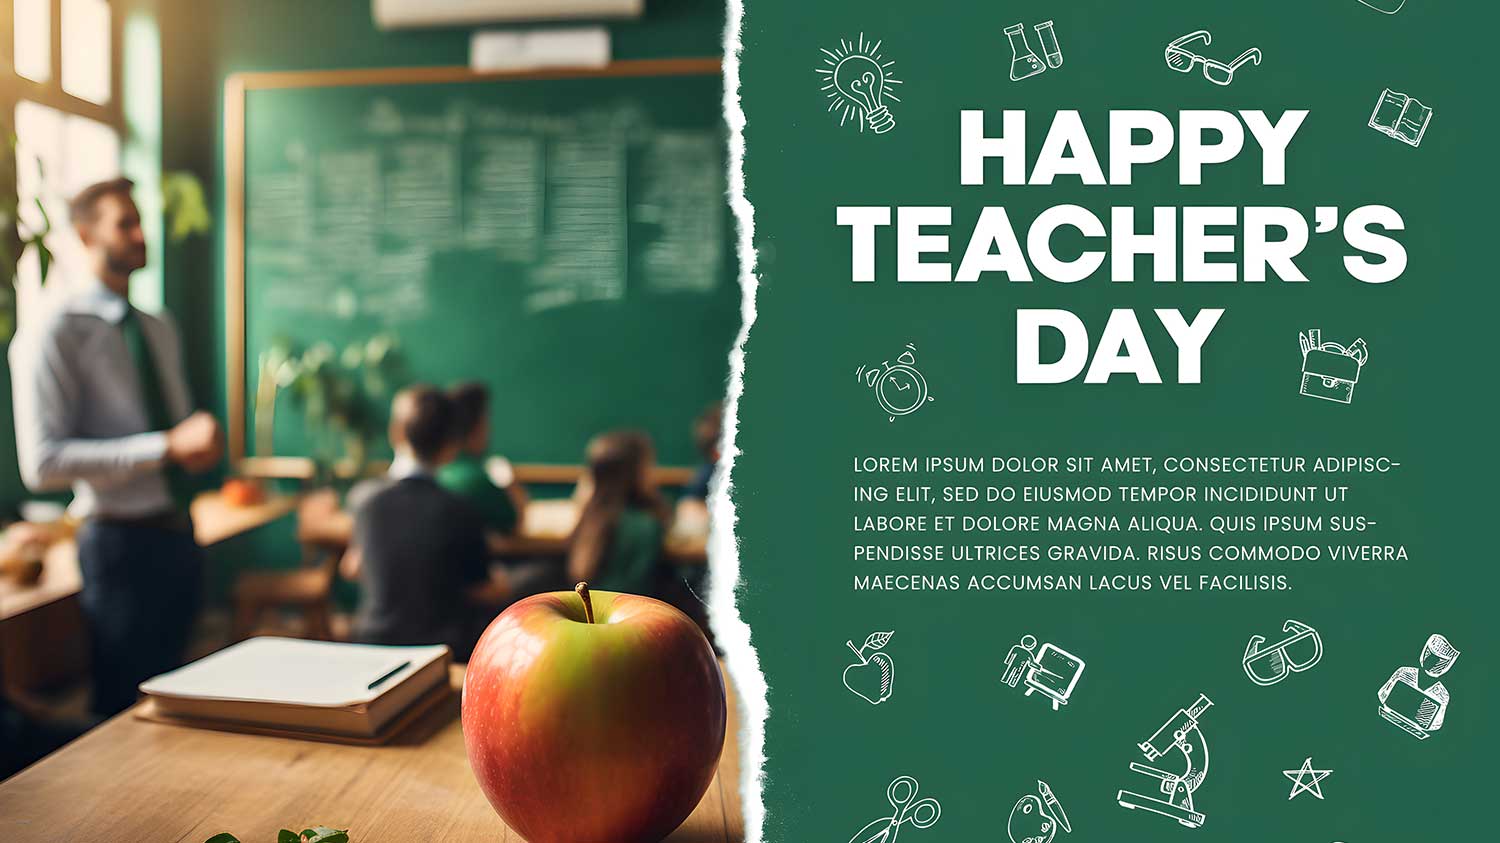 پست شبکه ی اجتماعی روز معلم با رنگ سبز و کلاس درس و دفتر و سیب